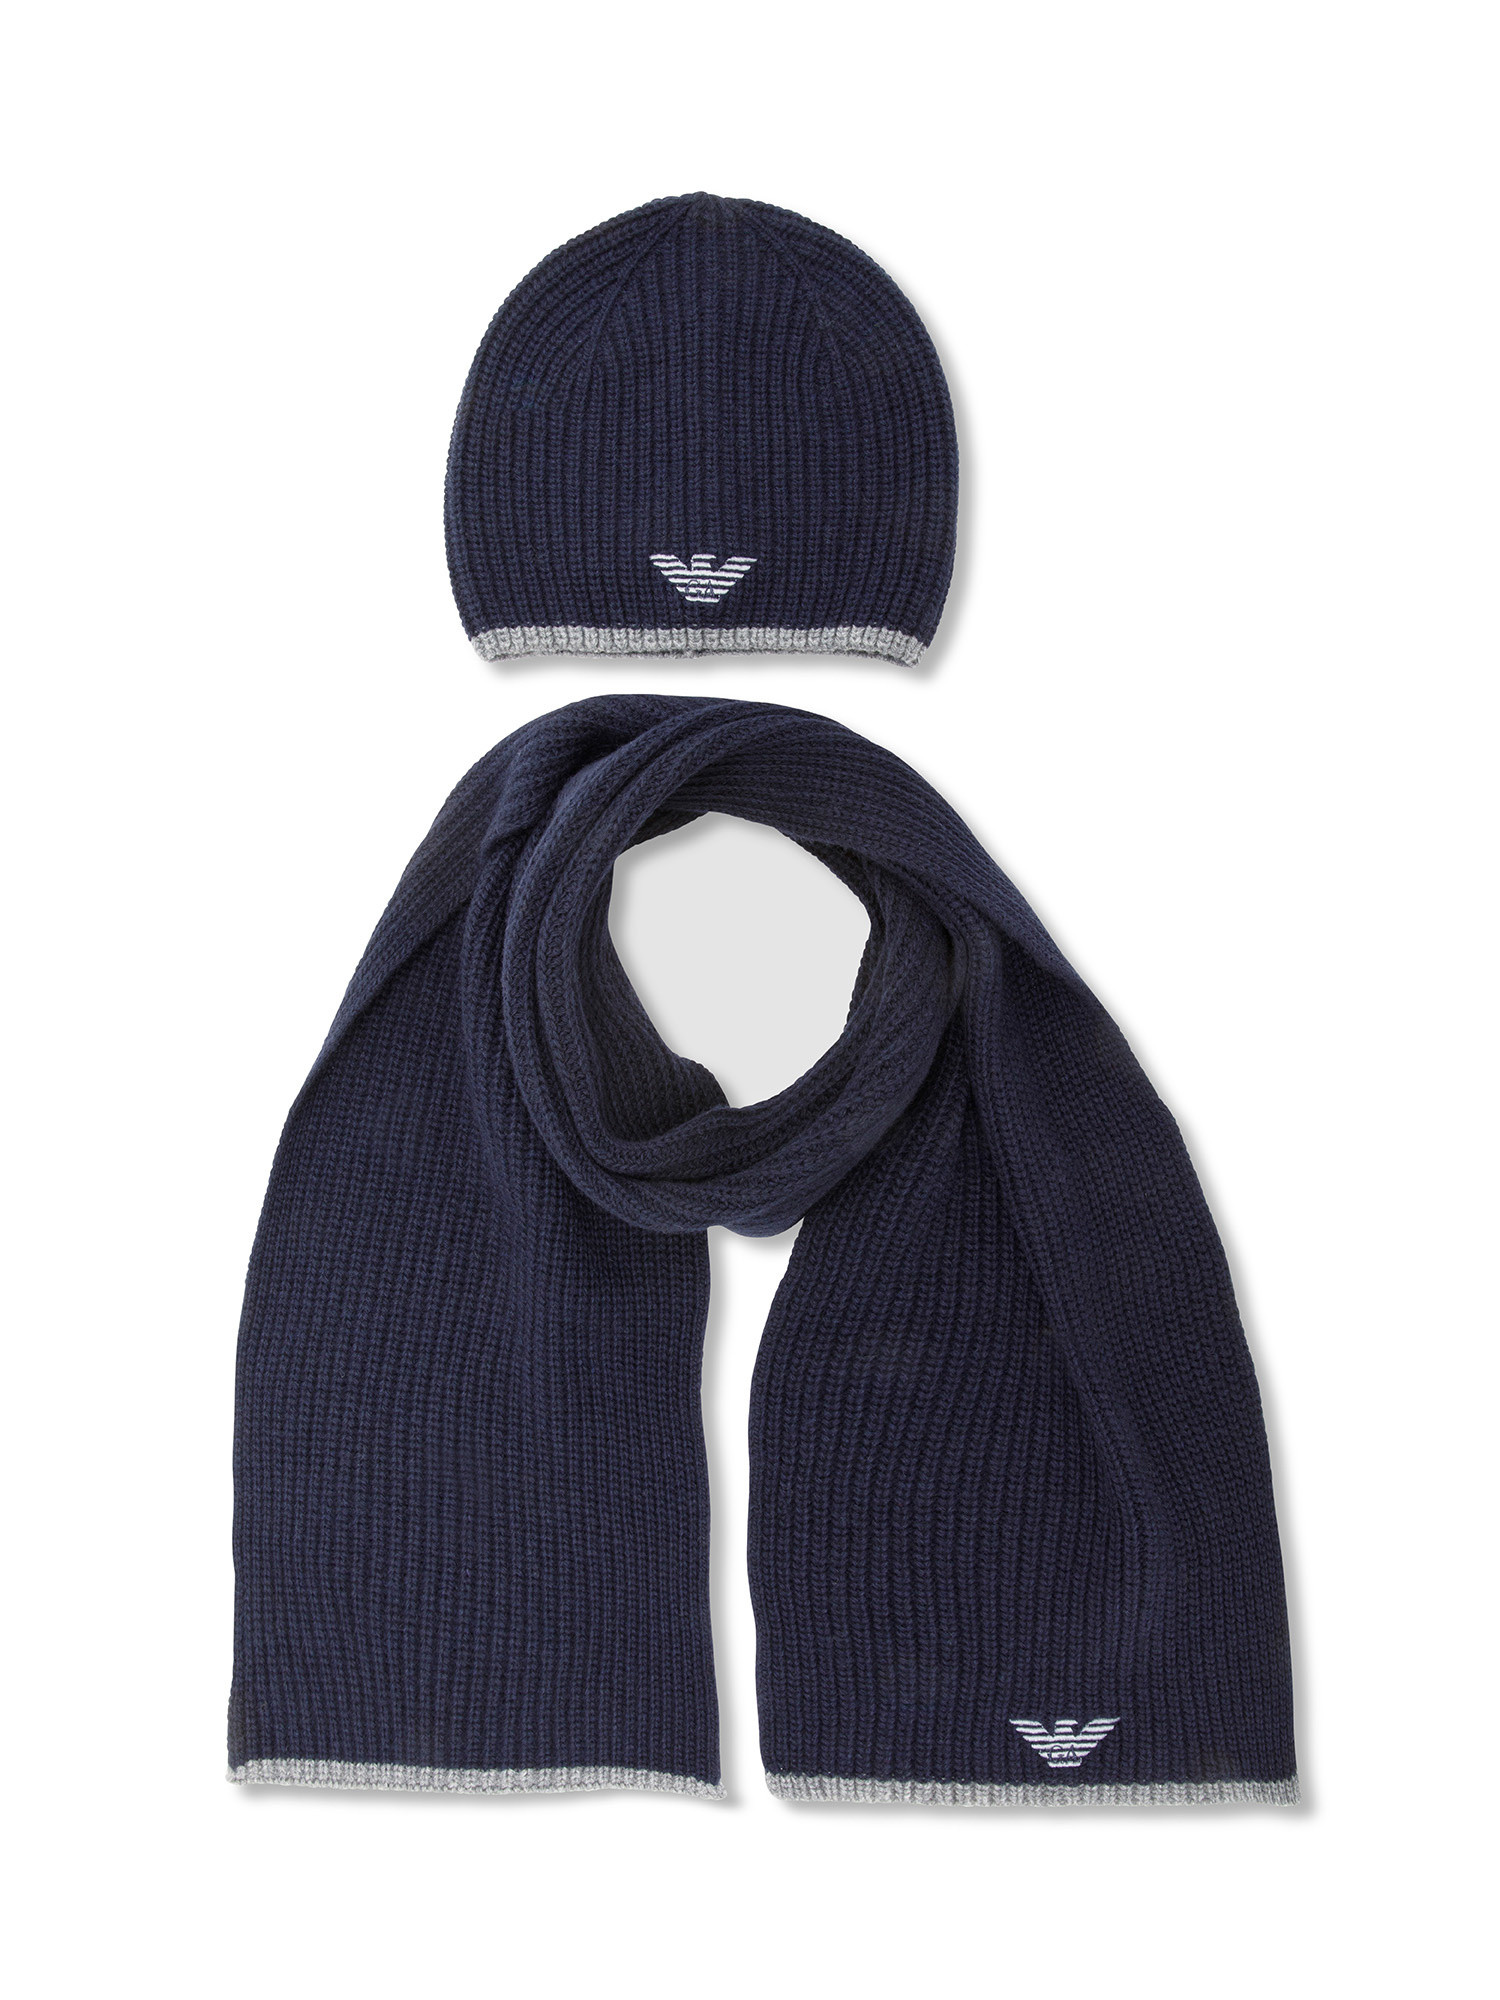 Emporio Armani - Set cappello e sciarpa con ricamo aquila, Blu scuro, large image number 1